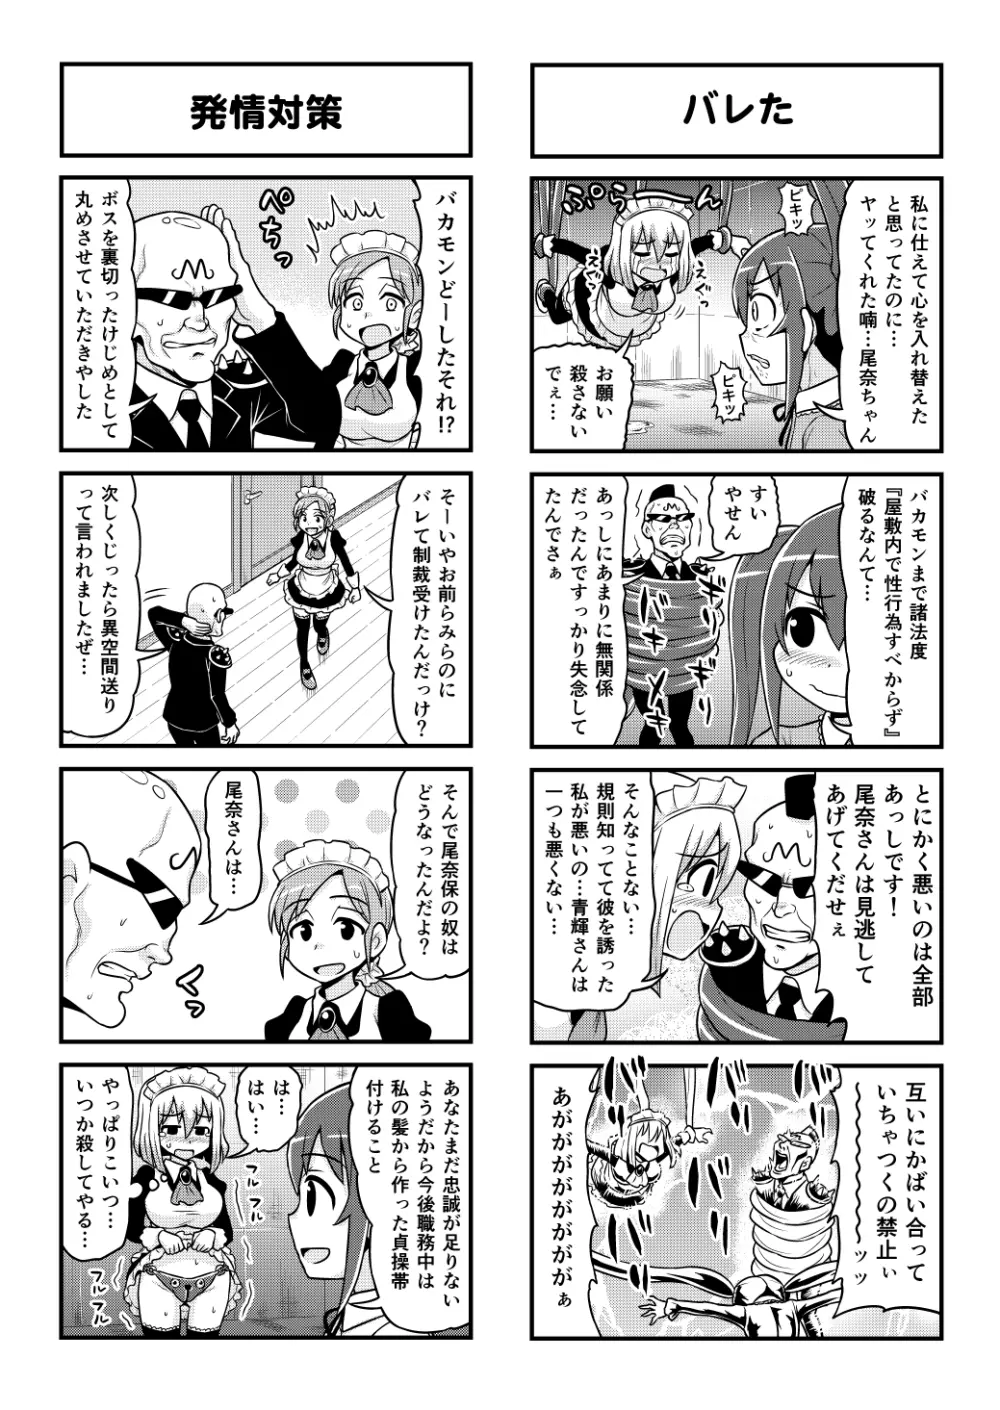 のんきBOY 1-48 - page412